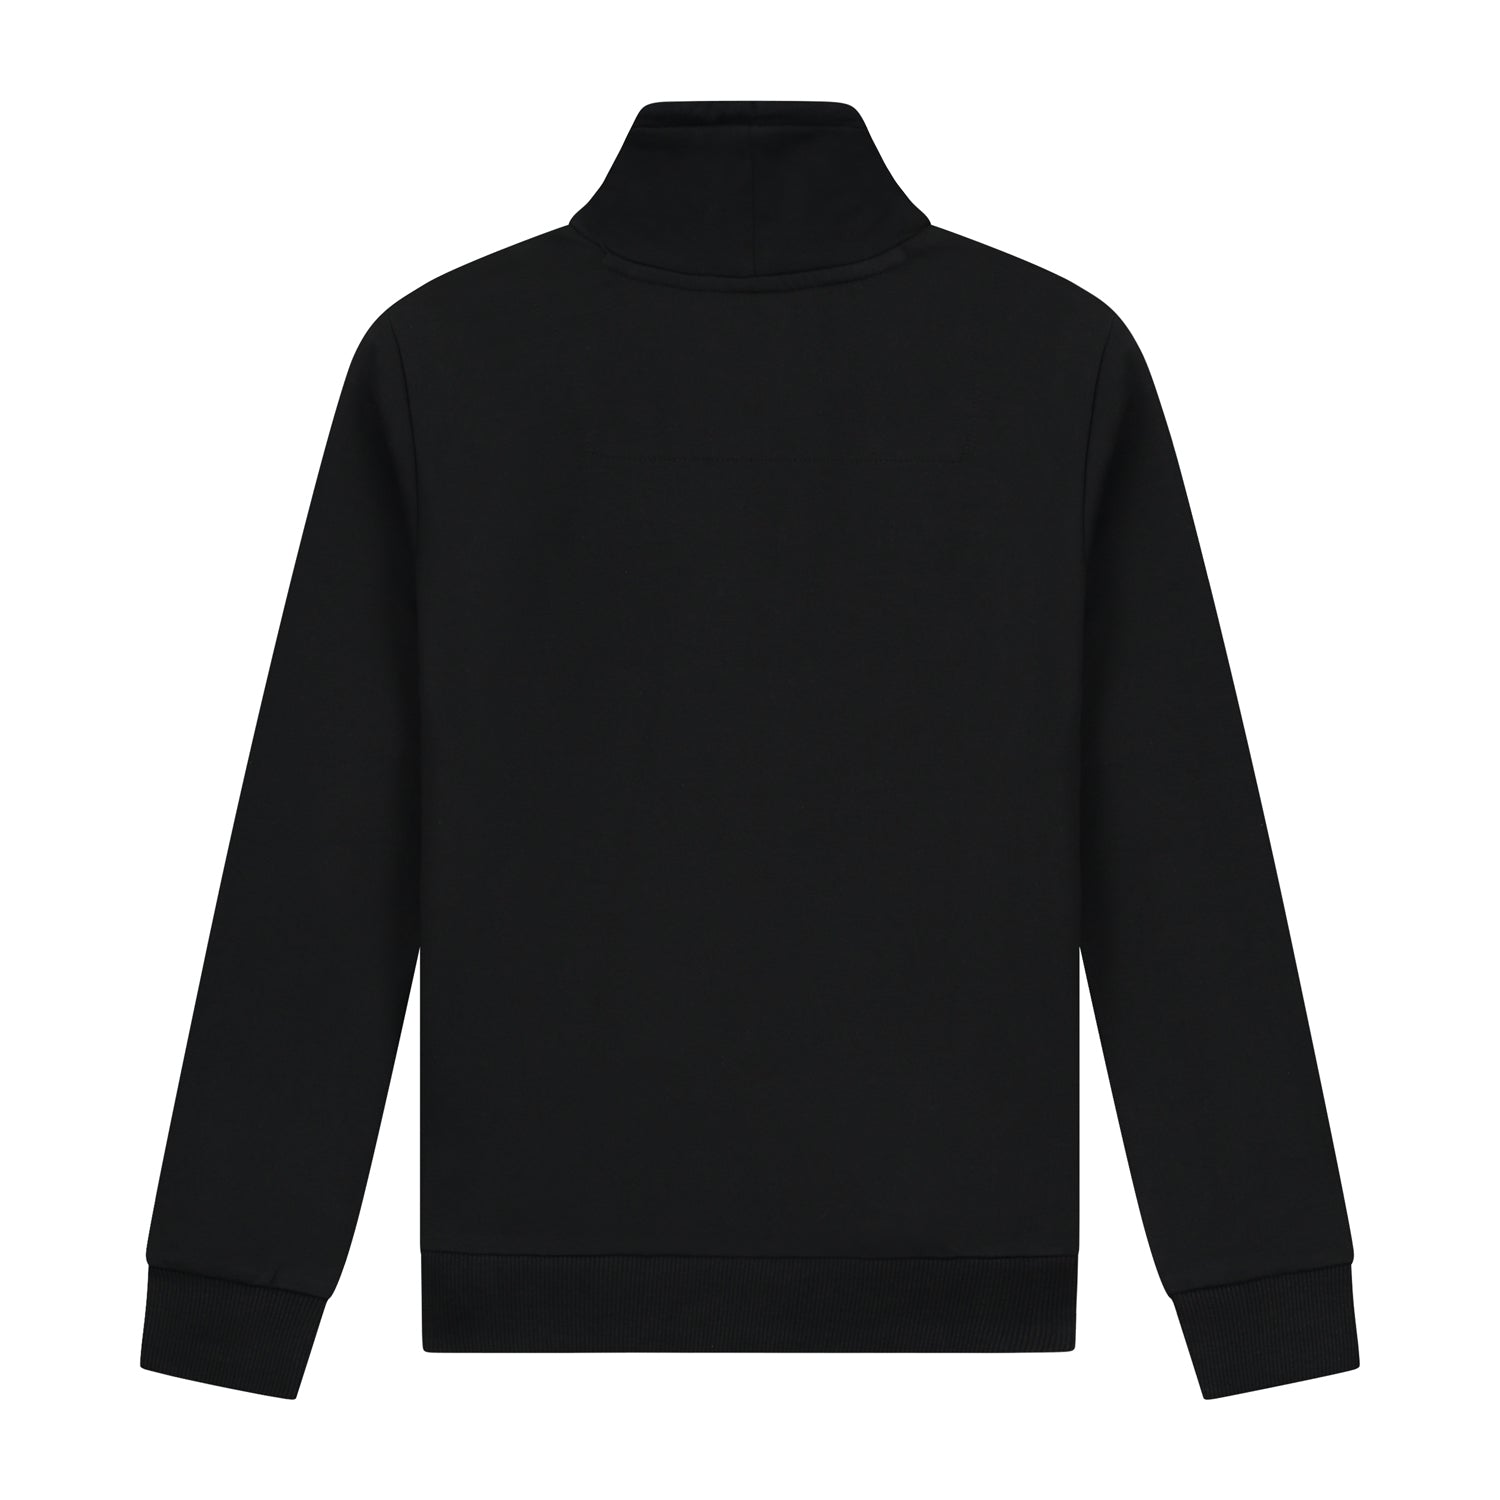 Jongens Sweater  Sook Black van Skurk in de kleur Black in maat 158-164.